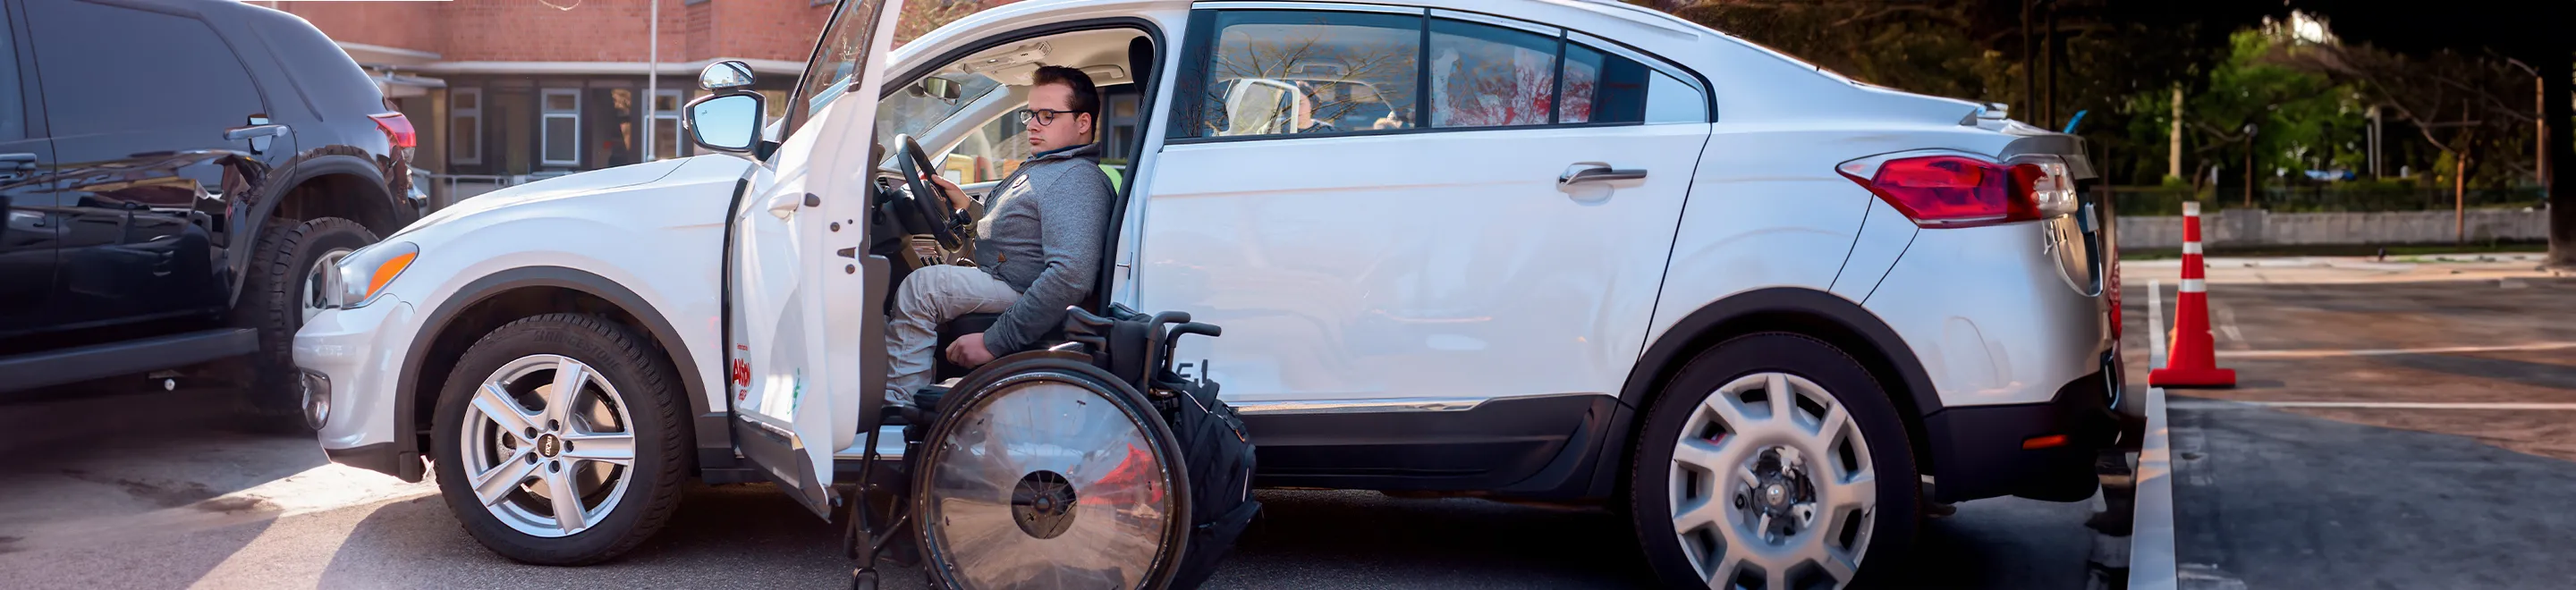 Ein junger Mann mit einer Gehbehinderung sitzt in einem Auto. Neben der geöffneten Fahrertür steht ein Rollstuhl.